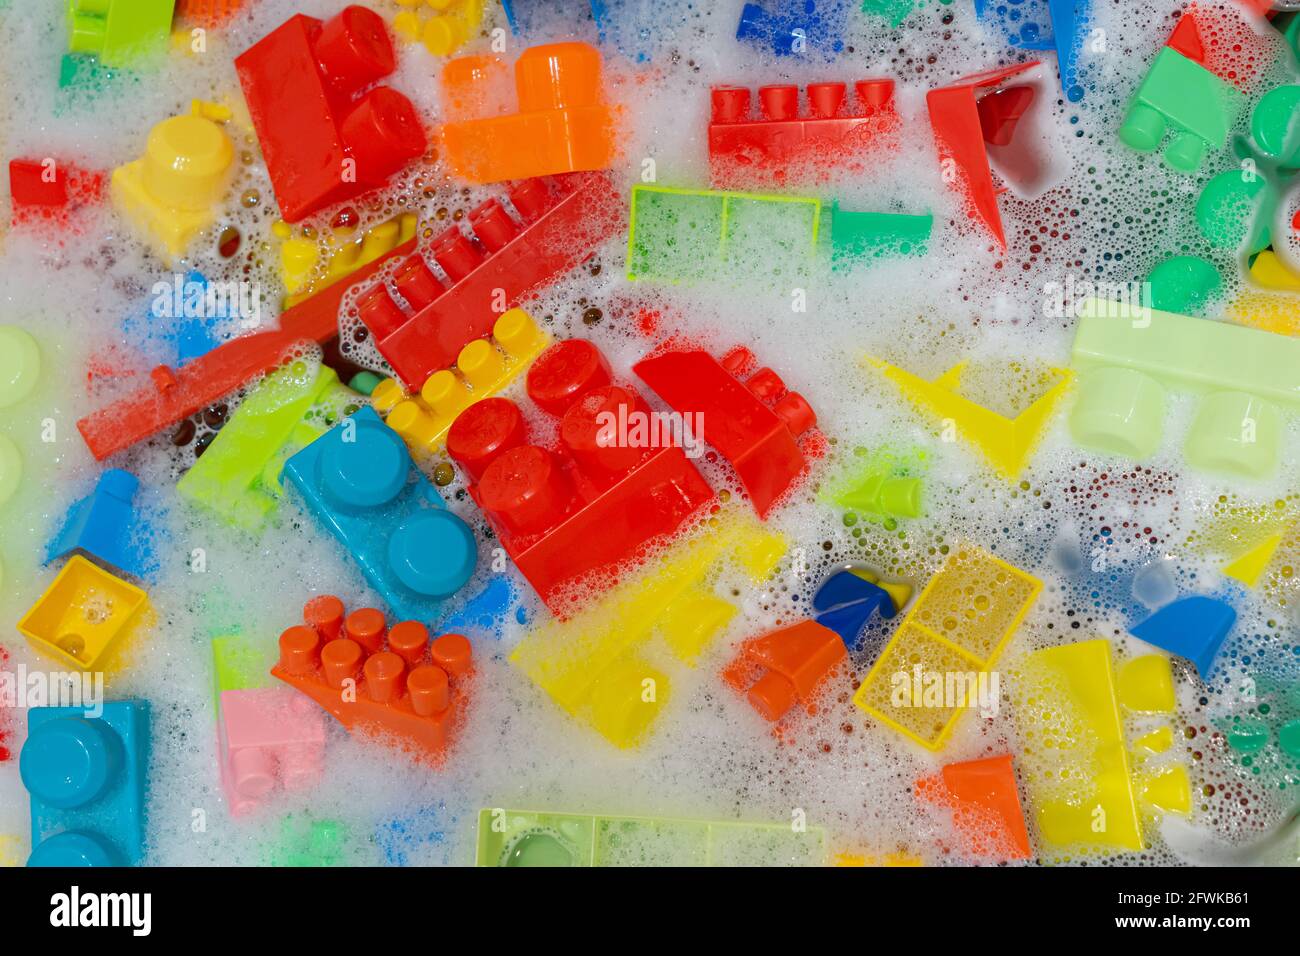 Reinigung von bunten Spielzeugbausteinen. Spielzeughygiene. Waschen von Plastikspielzeug im Bad mit Schaum. Stockfoto